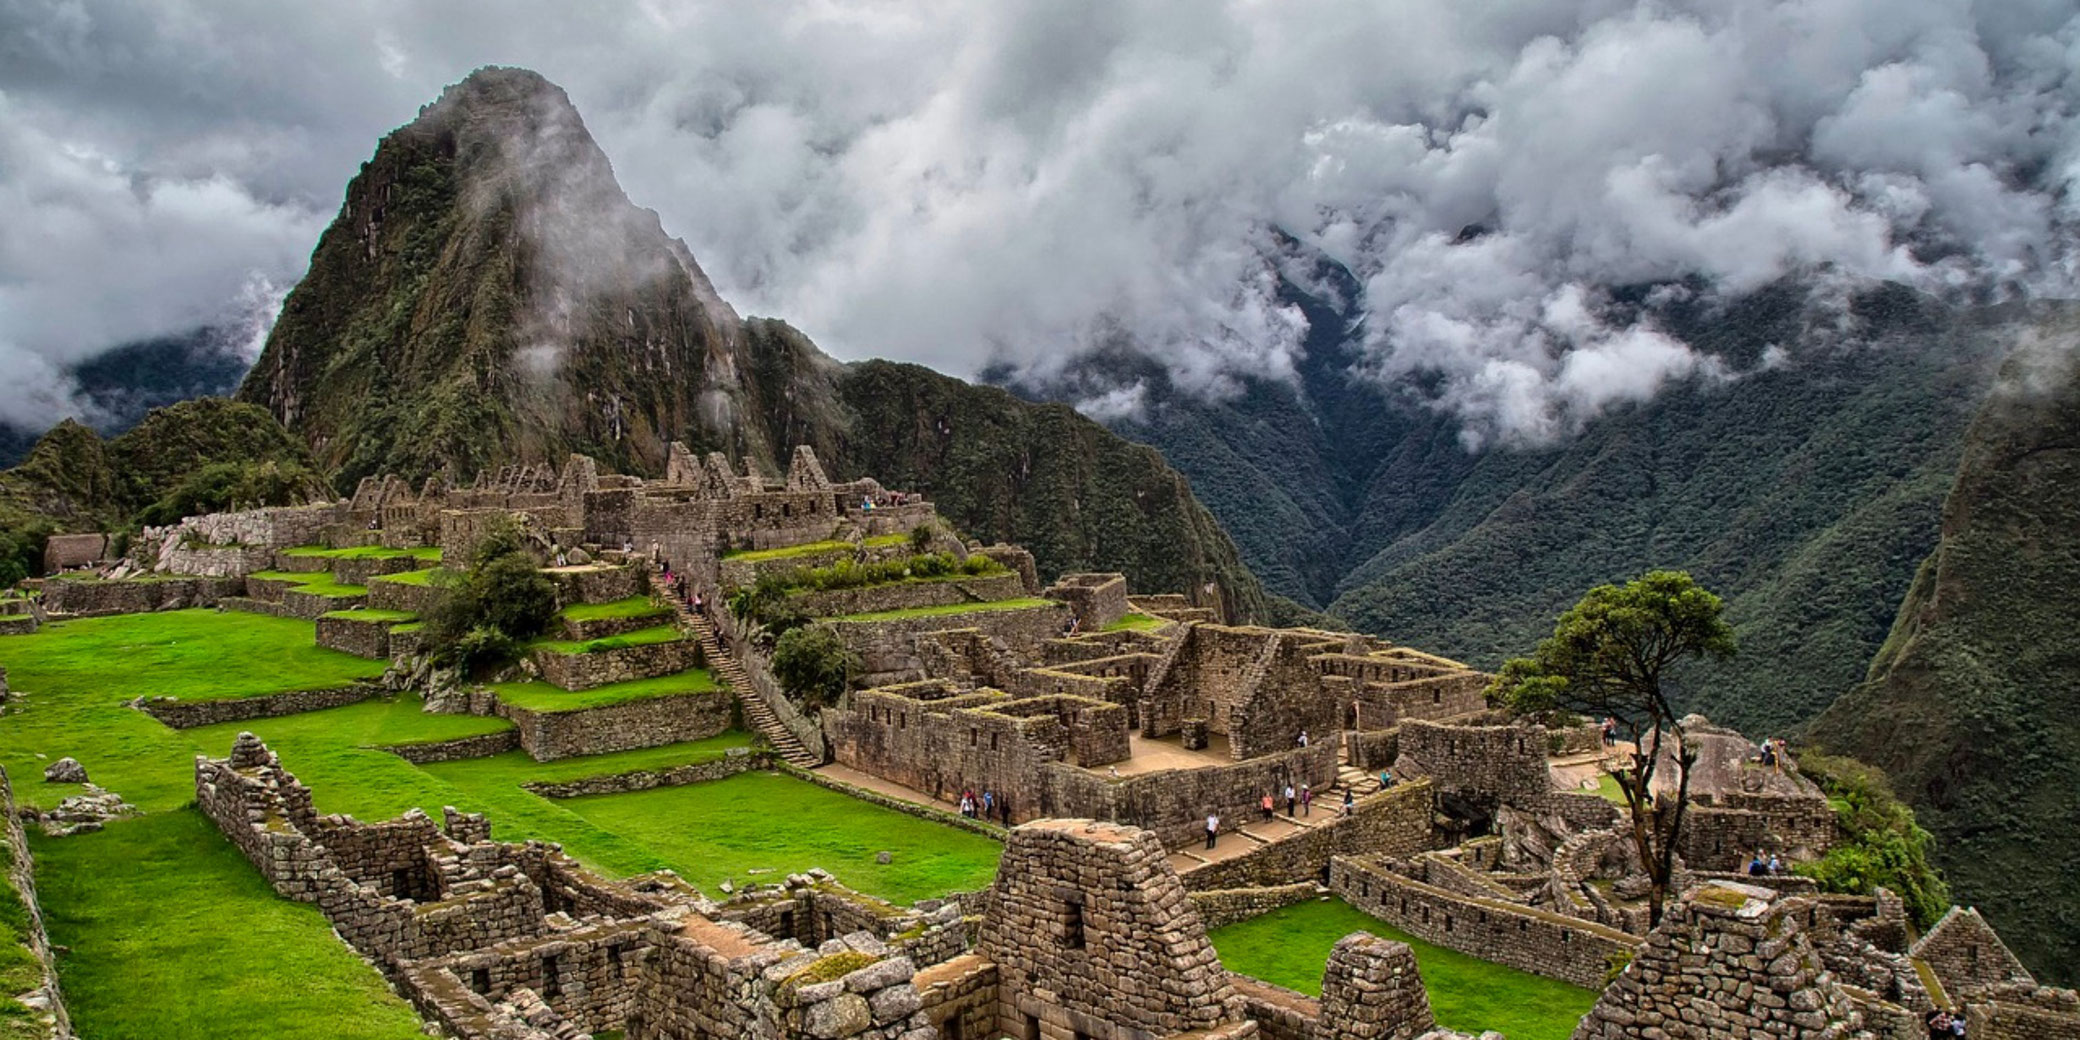 Historical Inca sites in Peru